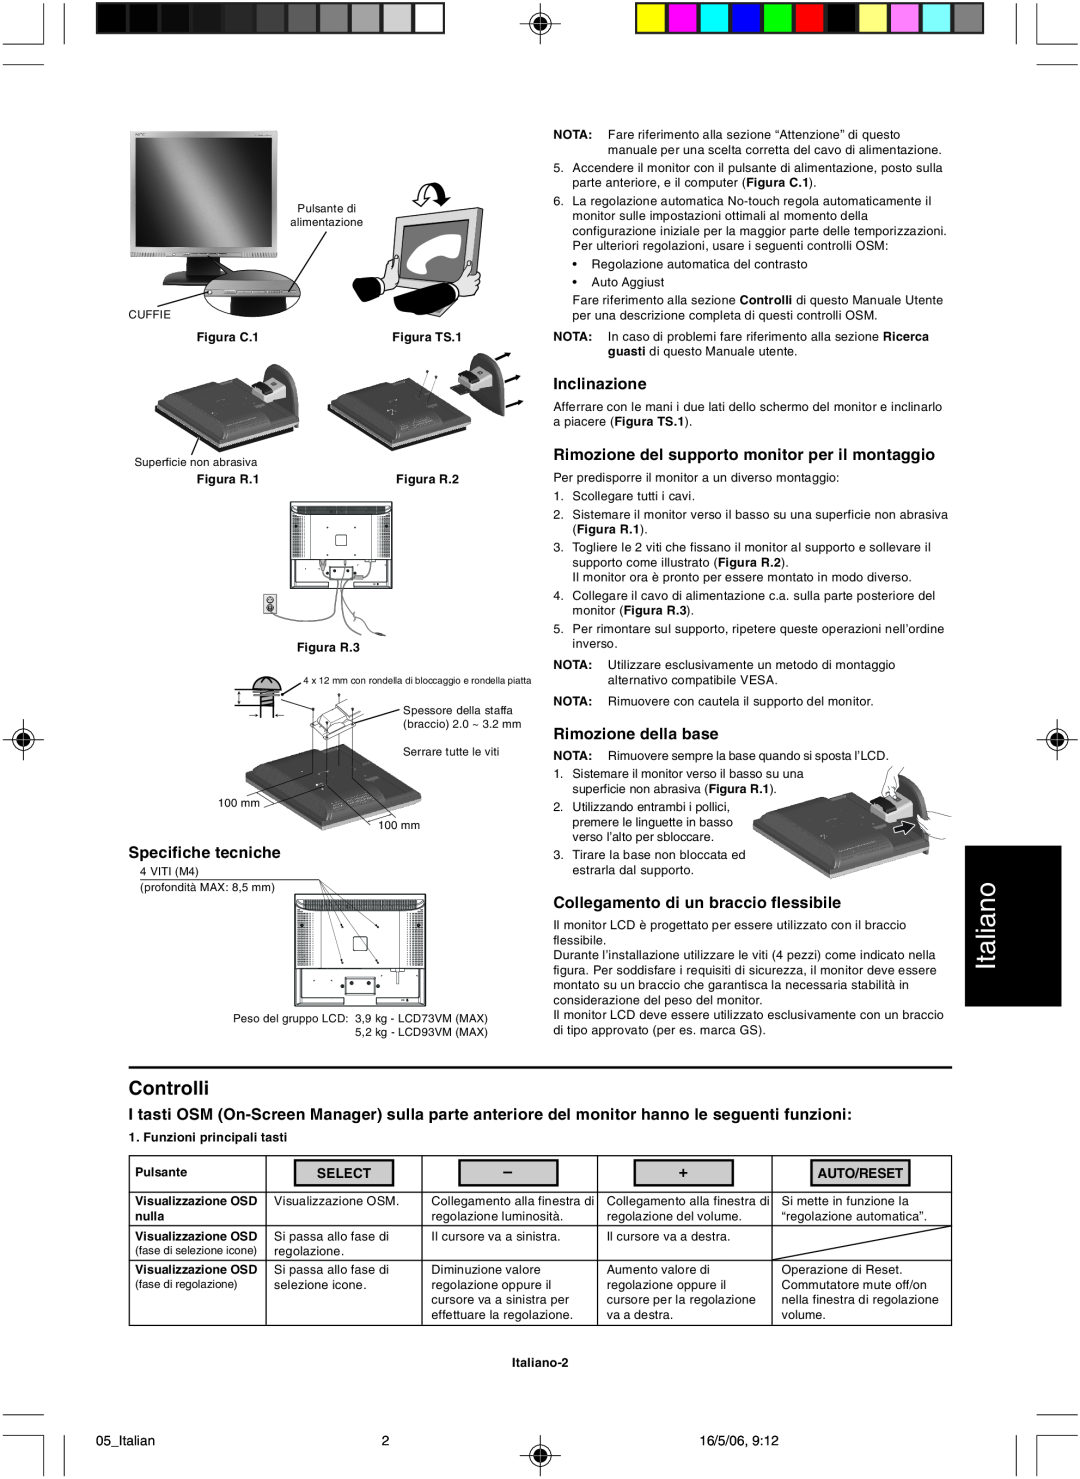 NEC LCD73VM user manual Italiano, Controlli, Select, Auto/Reset 